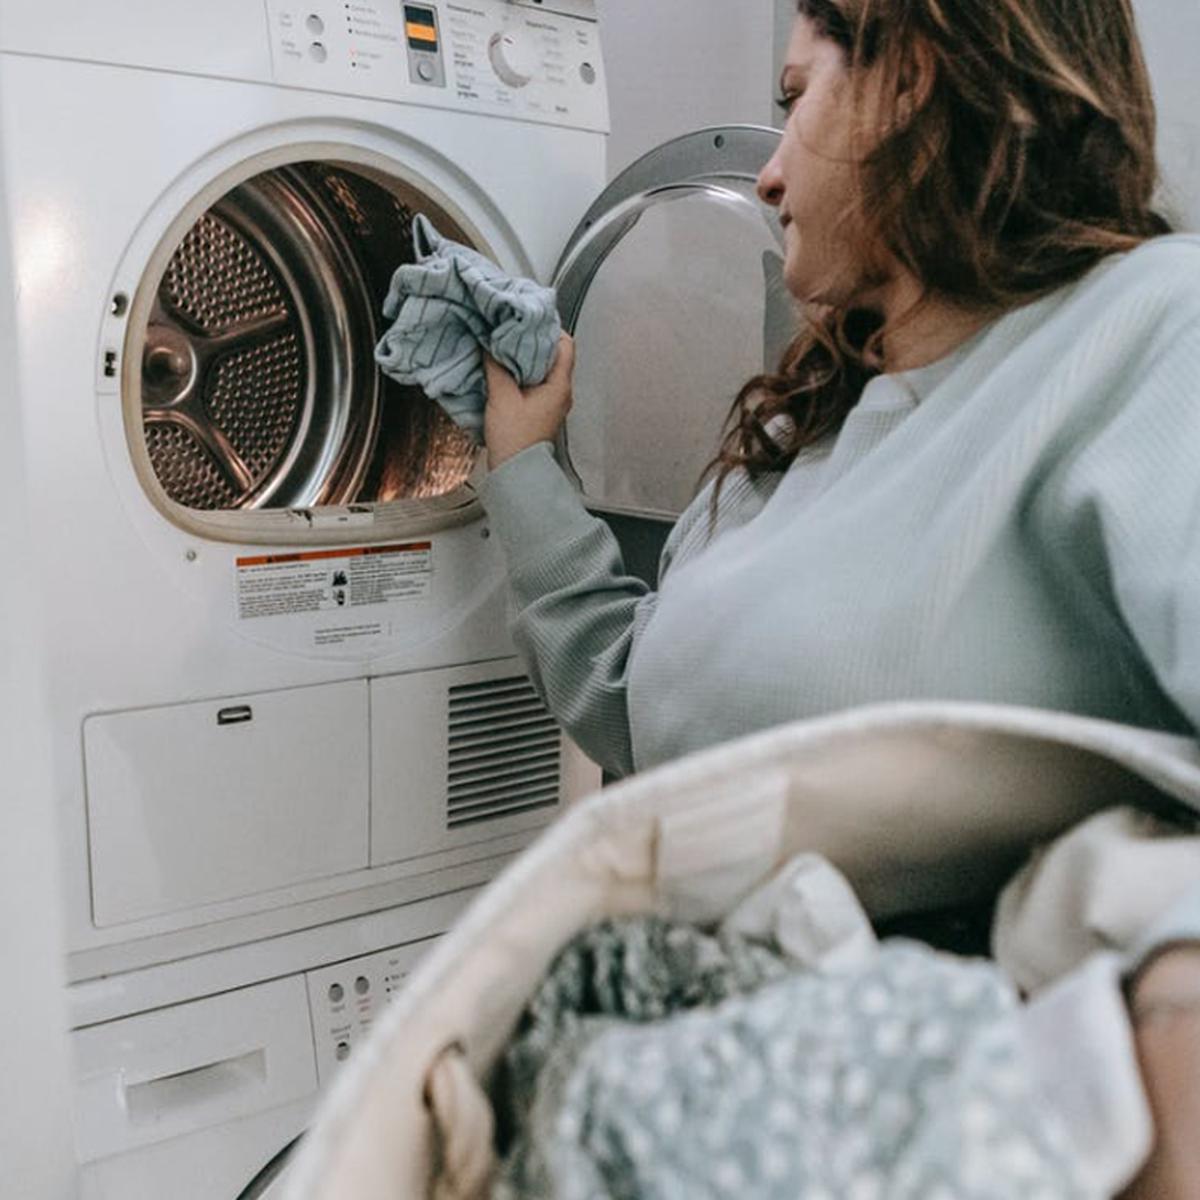 Trucos limpieza: El truco que quitará todos los pelos de la ropa en la  lavadora